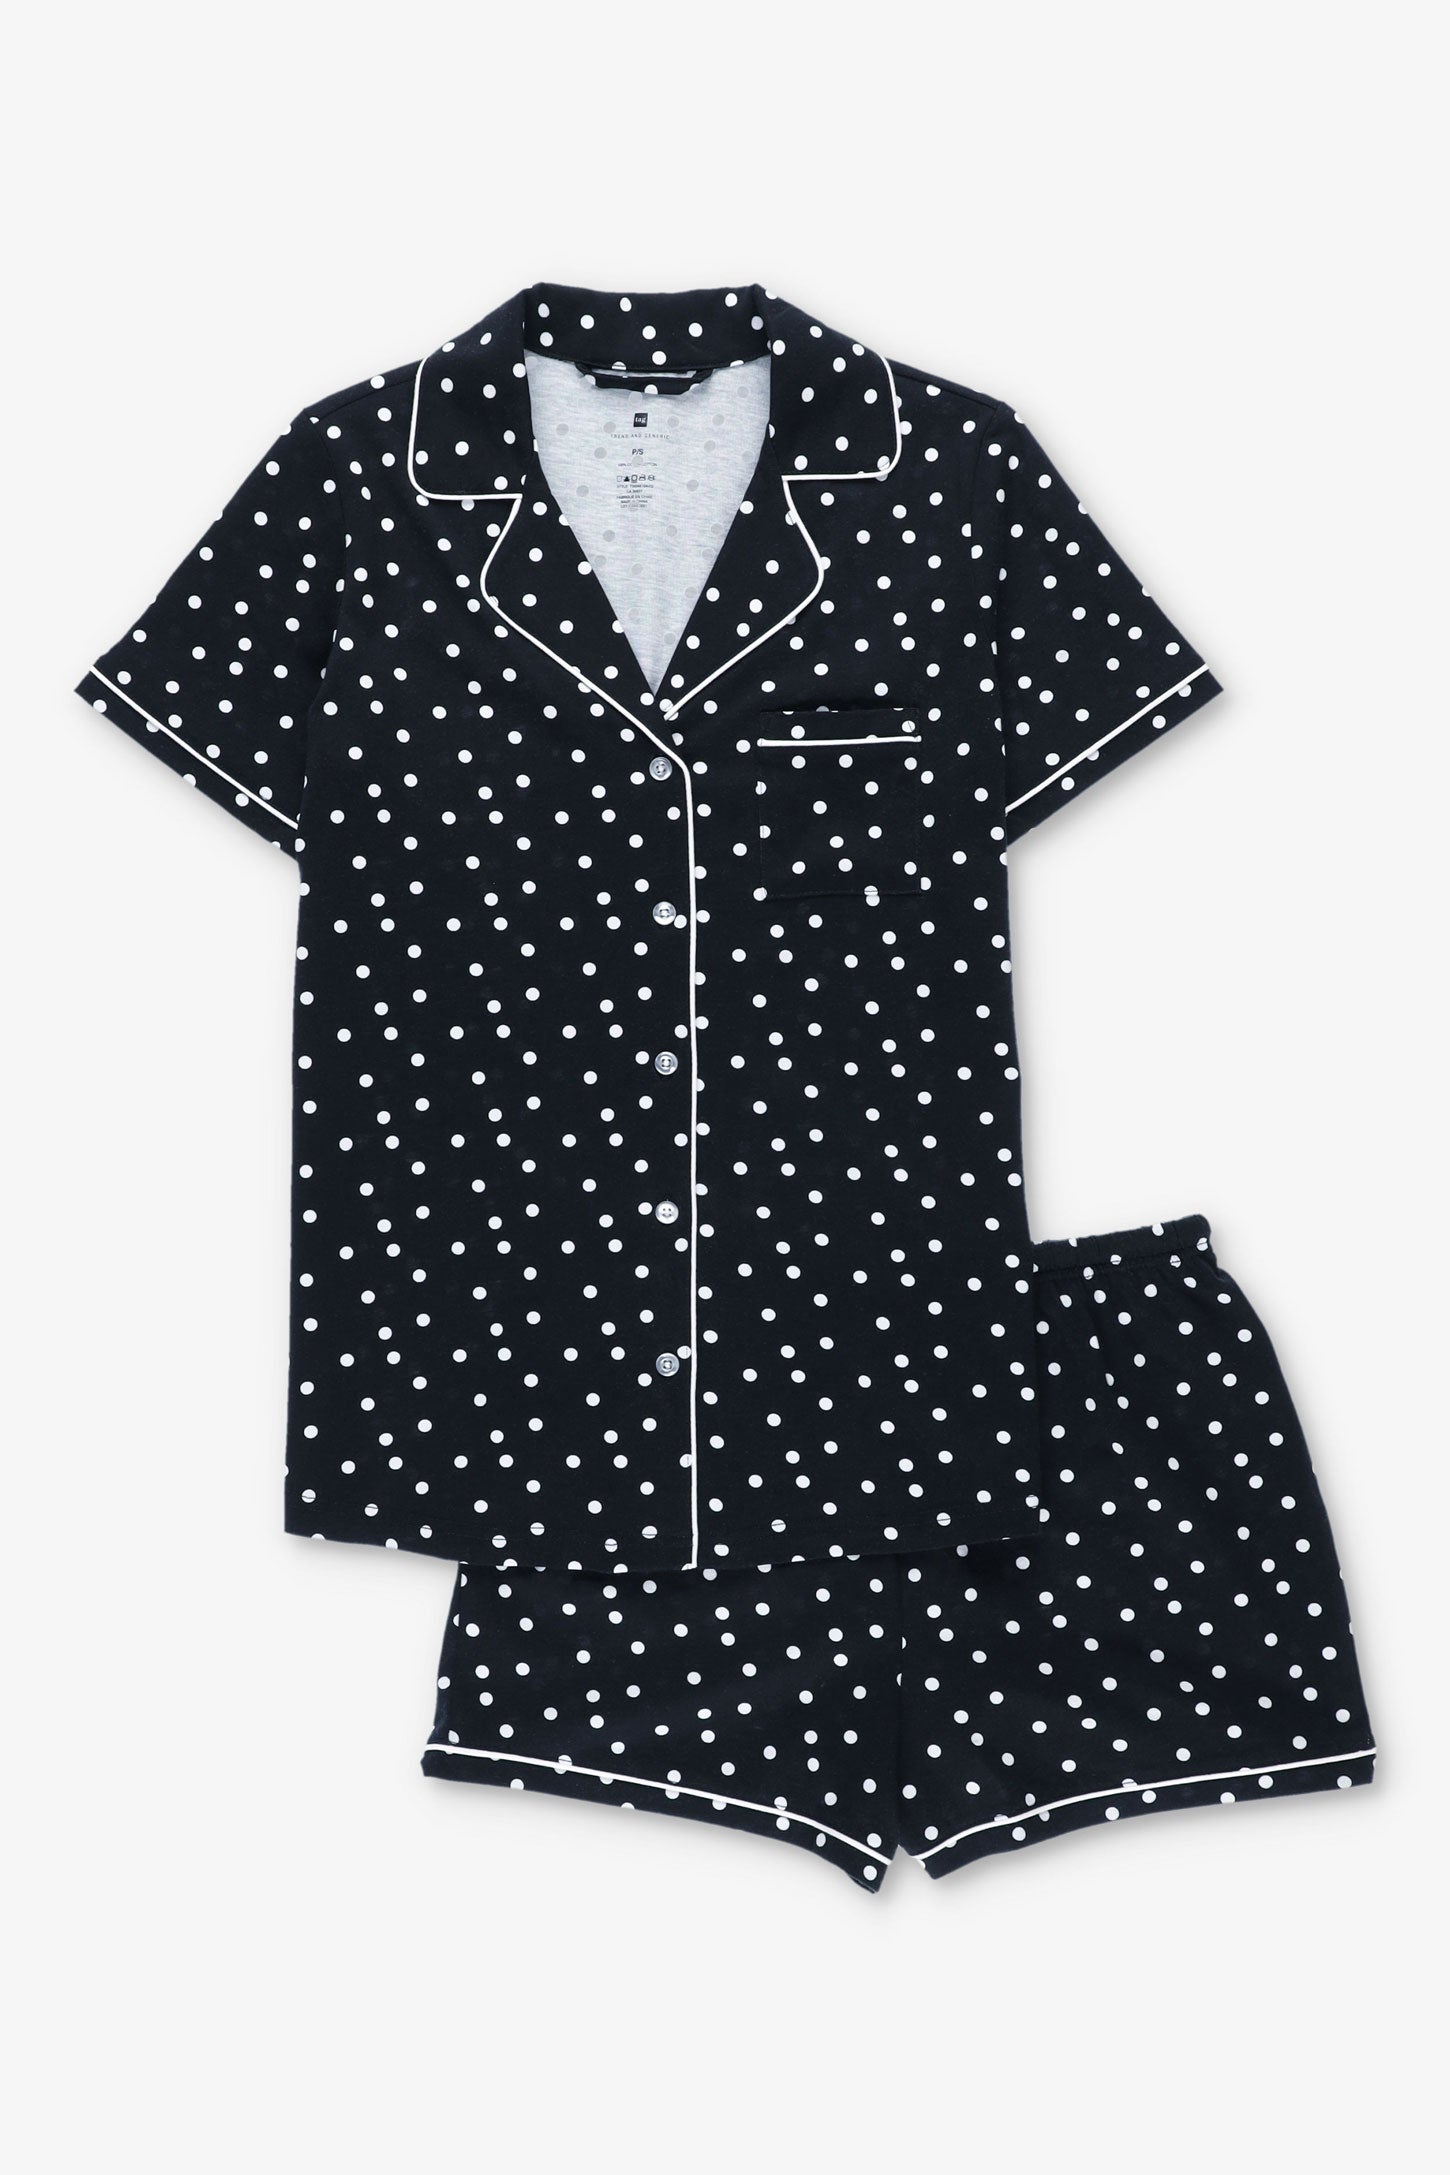 Pyjama 2-pièces chemise et short coton - Femme && NOIR